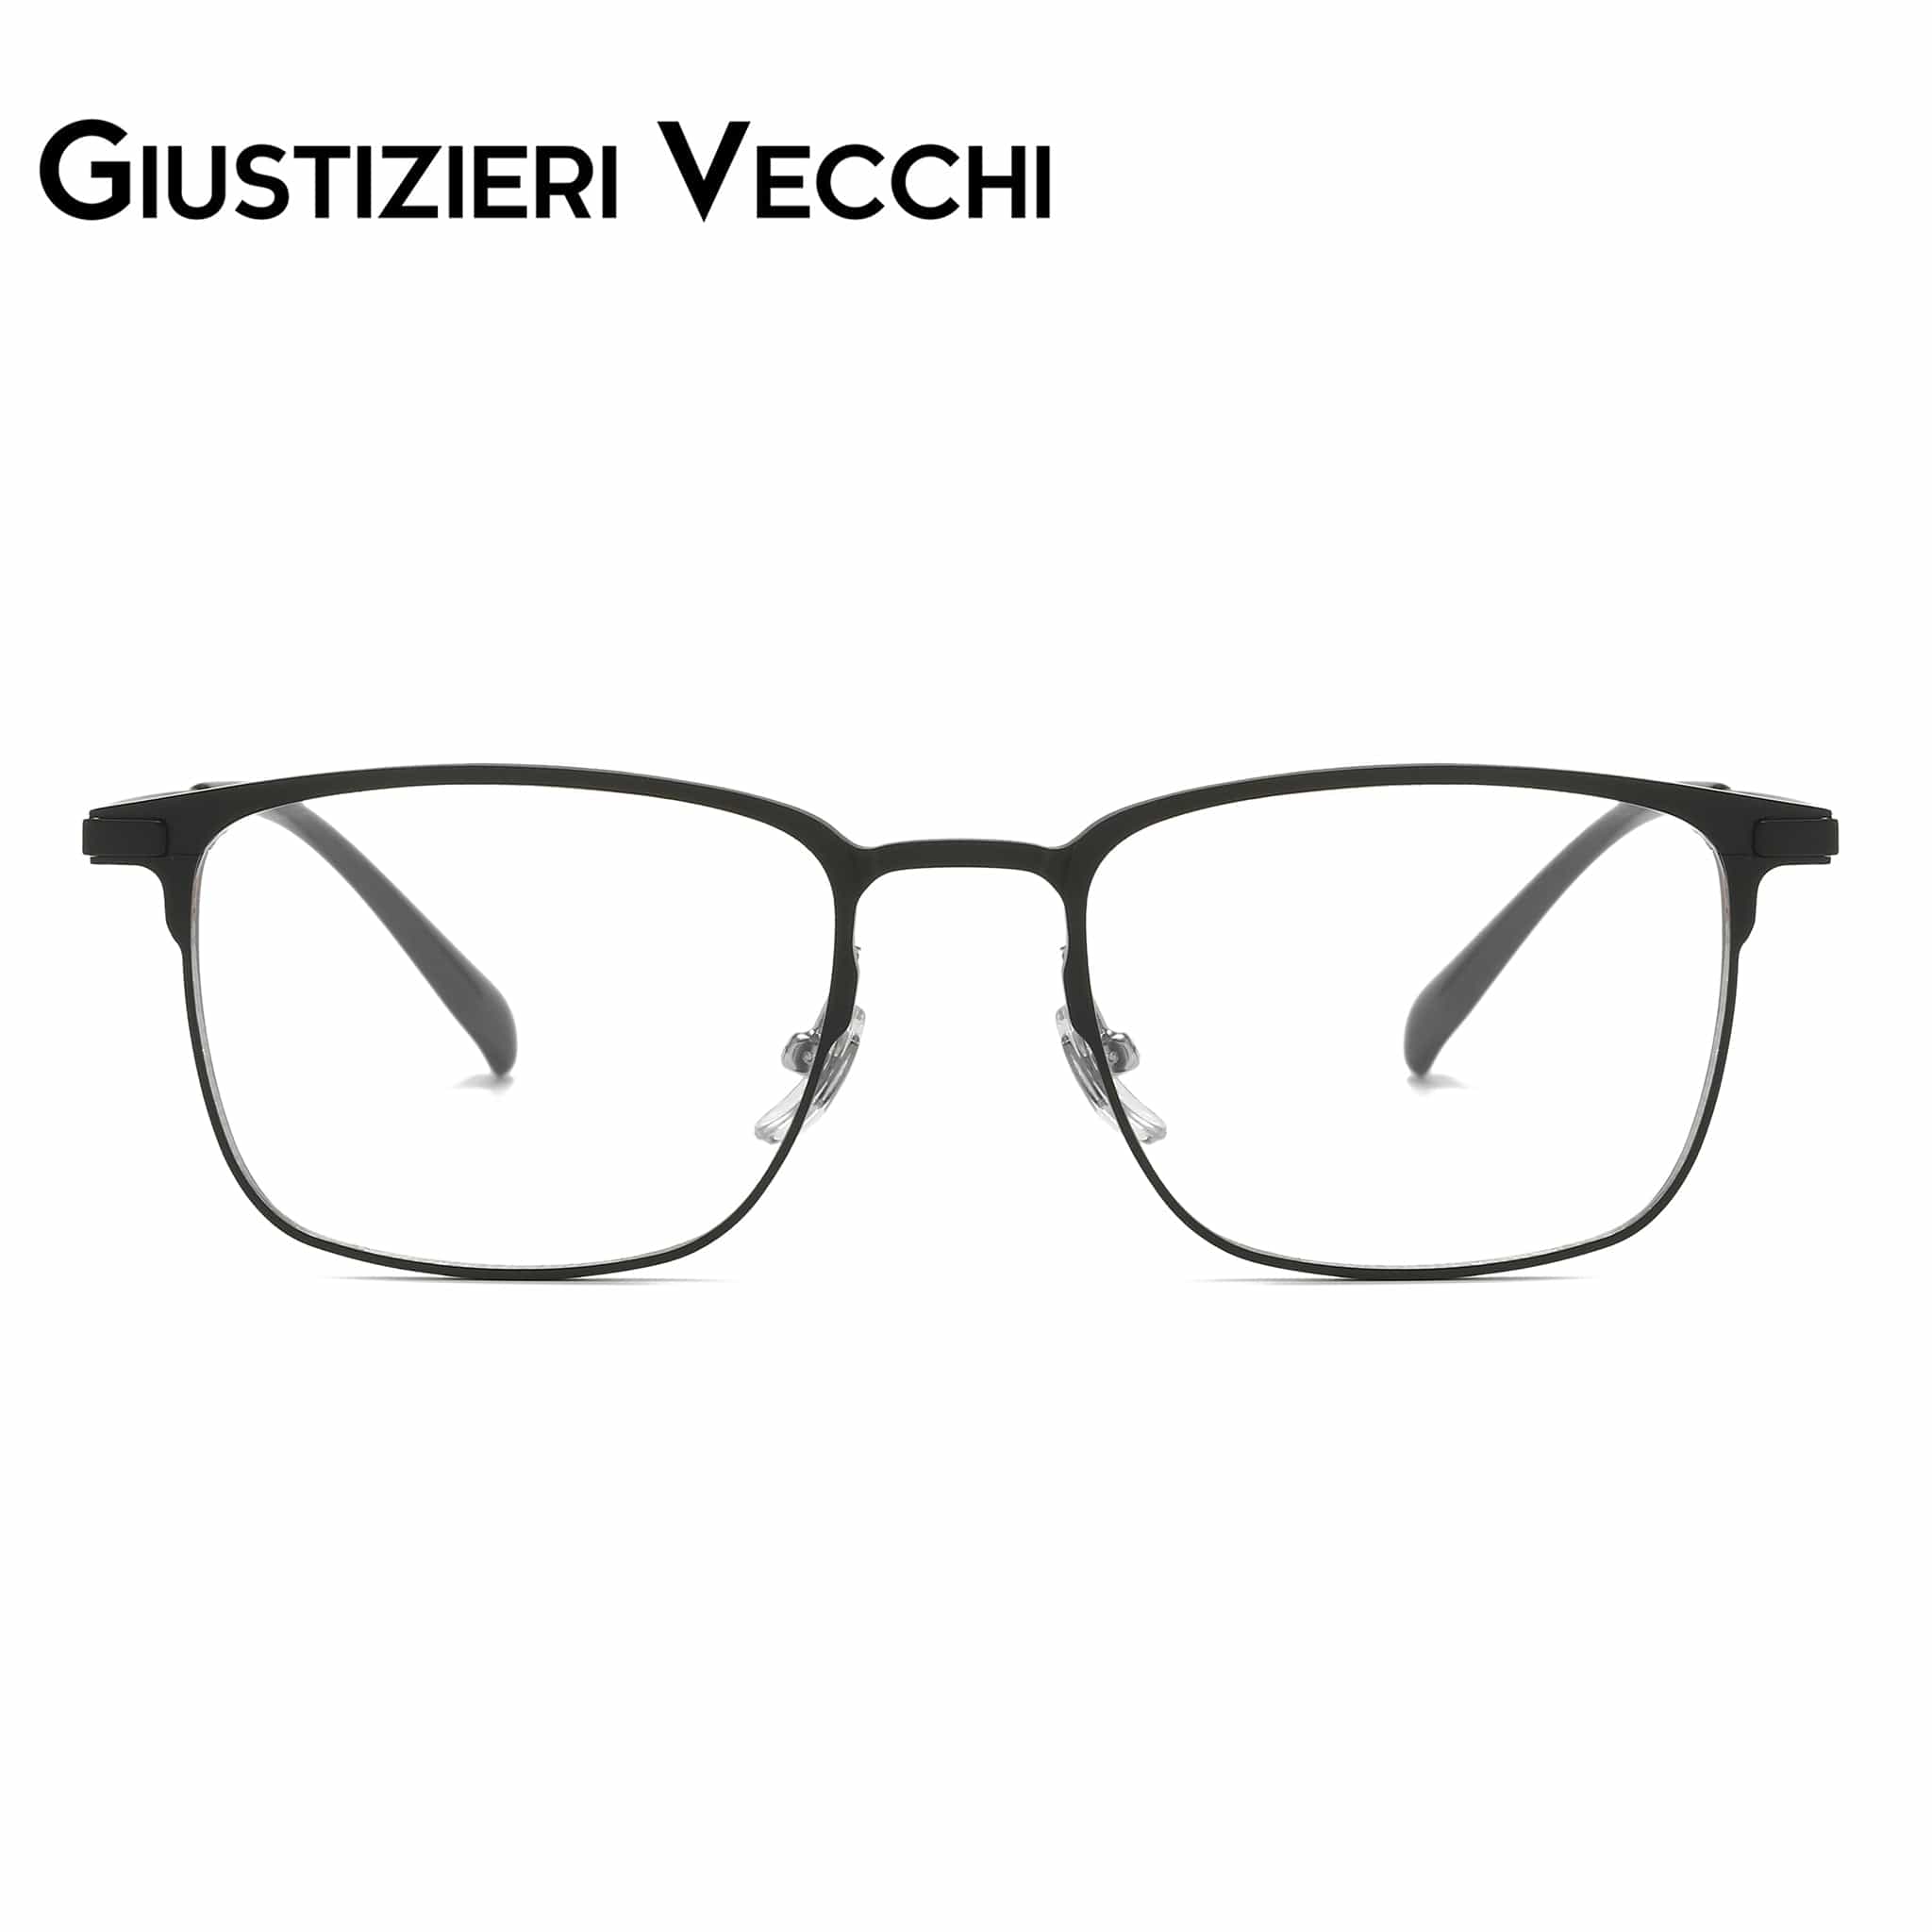 GIUSTIZIERI VECCHI Eyeglasses Medium / Black Nightfall Uno